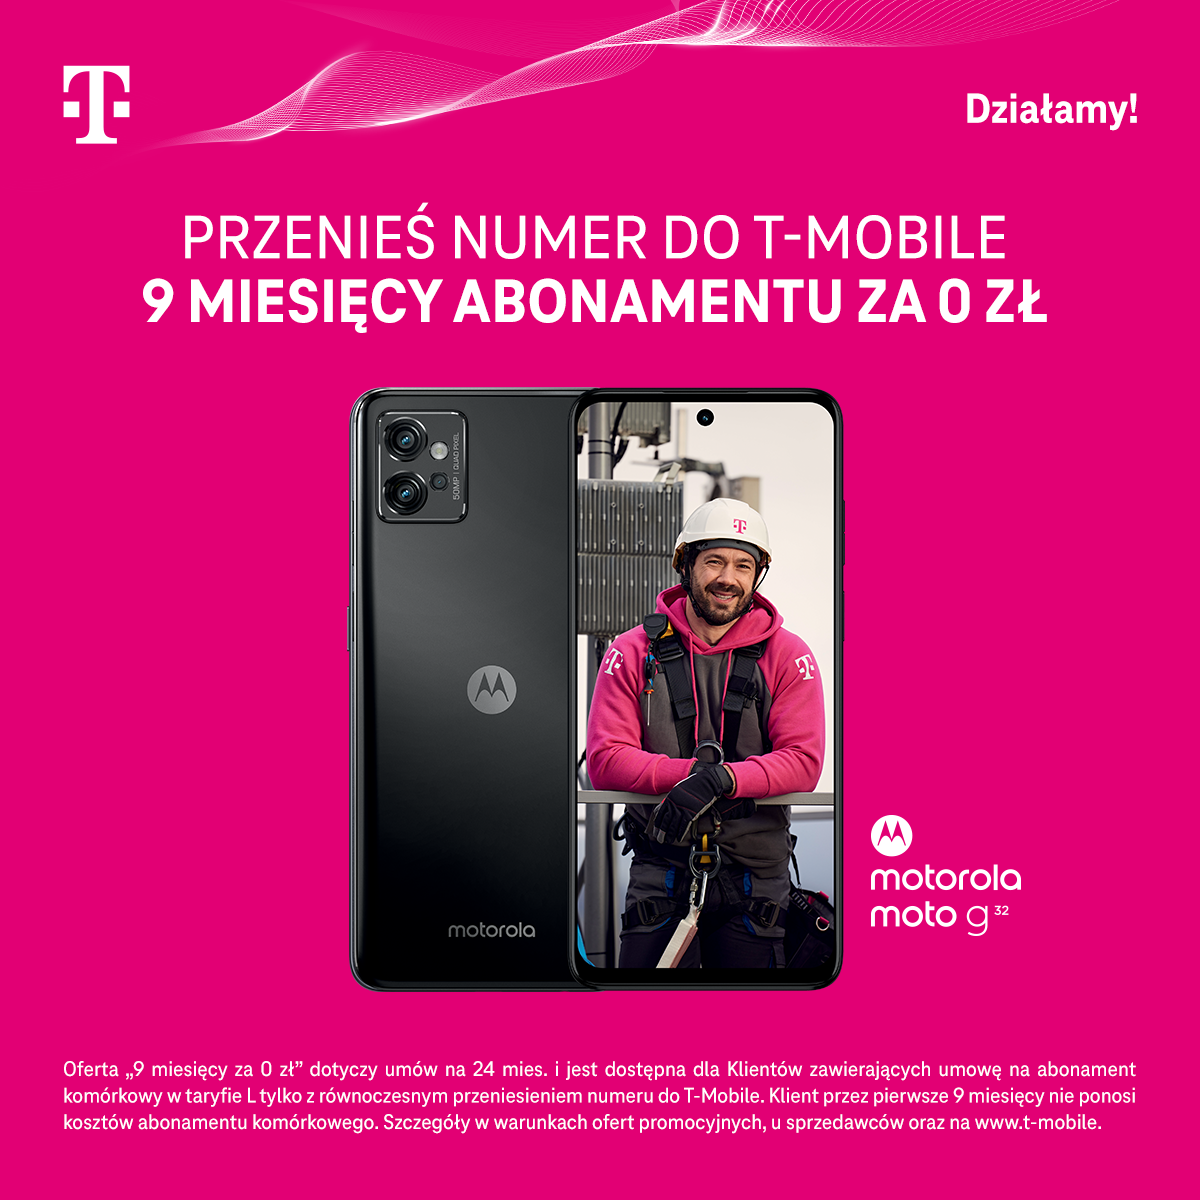 T-Mobile, Przenieś numer do T-Mobile i zyskaj 9 miesięcy abonamentu za 0 zł